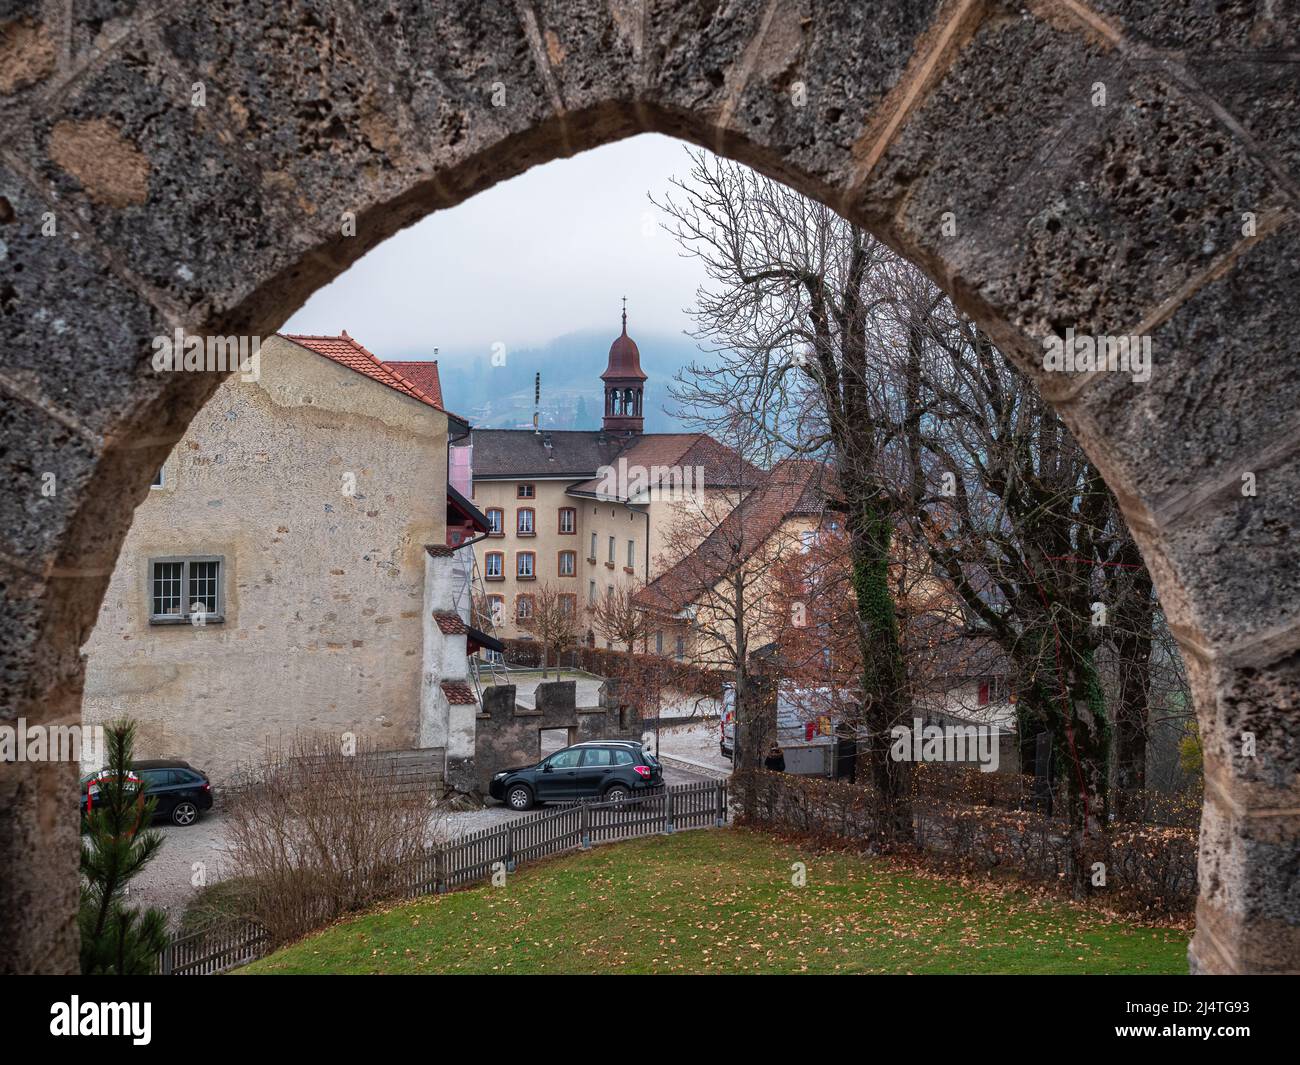 Gruyeres, Svizzera - 23 novembre 2021: Città vecchia del borgo medievale svizzero Gruyeres nel cantone di Friburgo. Foto Stock